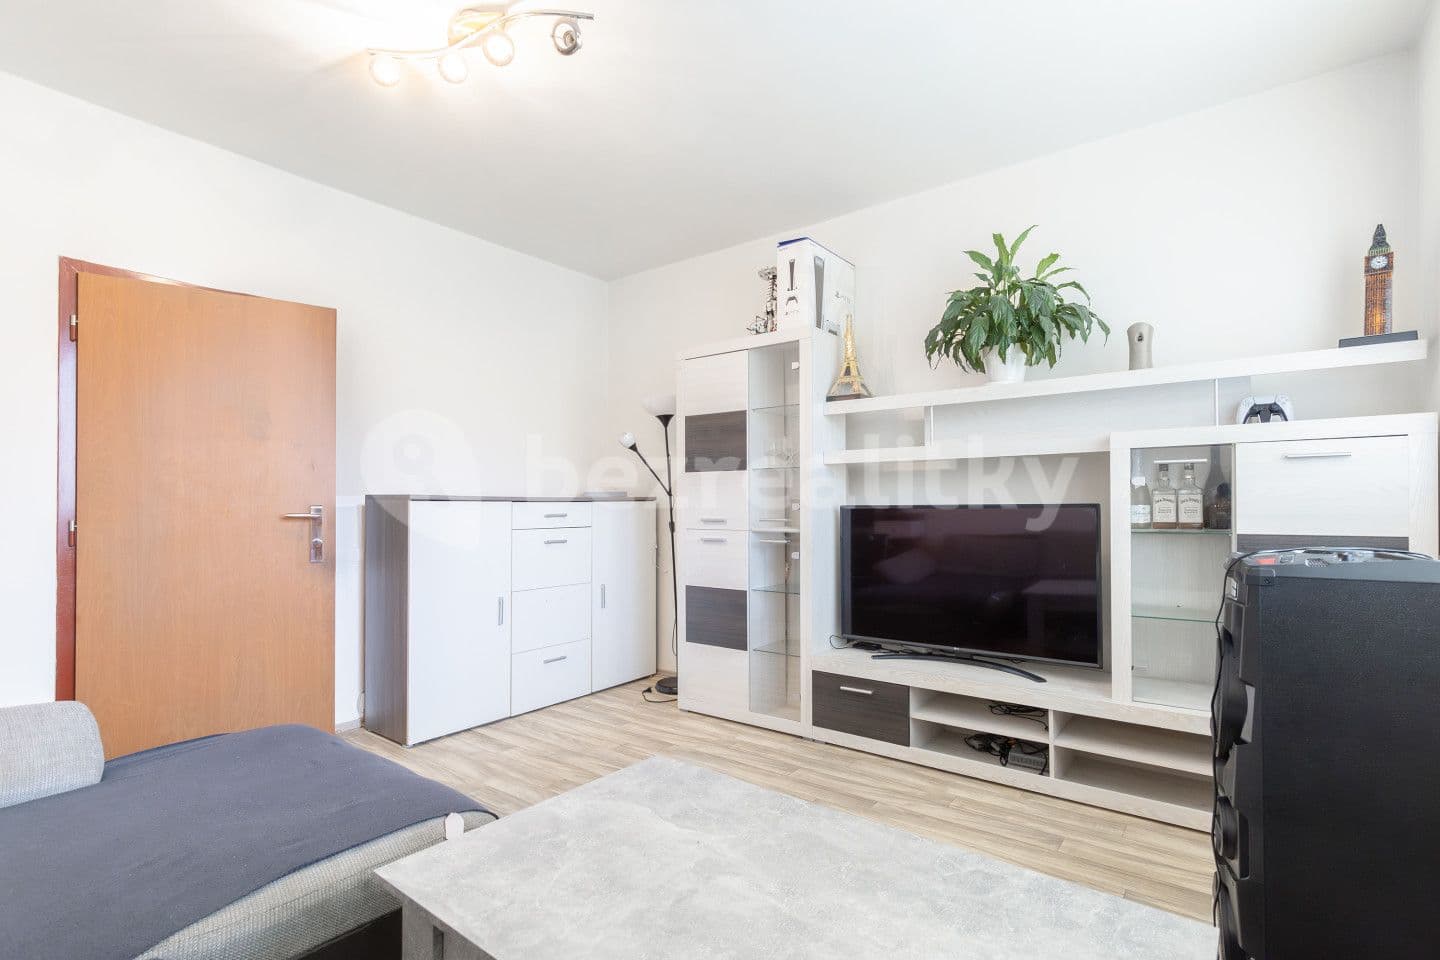 3 bedroom flat for sale, 59 m², M. Chasáka, Frýdek-Místek, Moravskoslezský Region